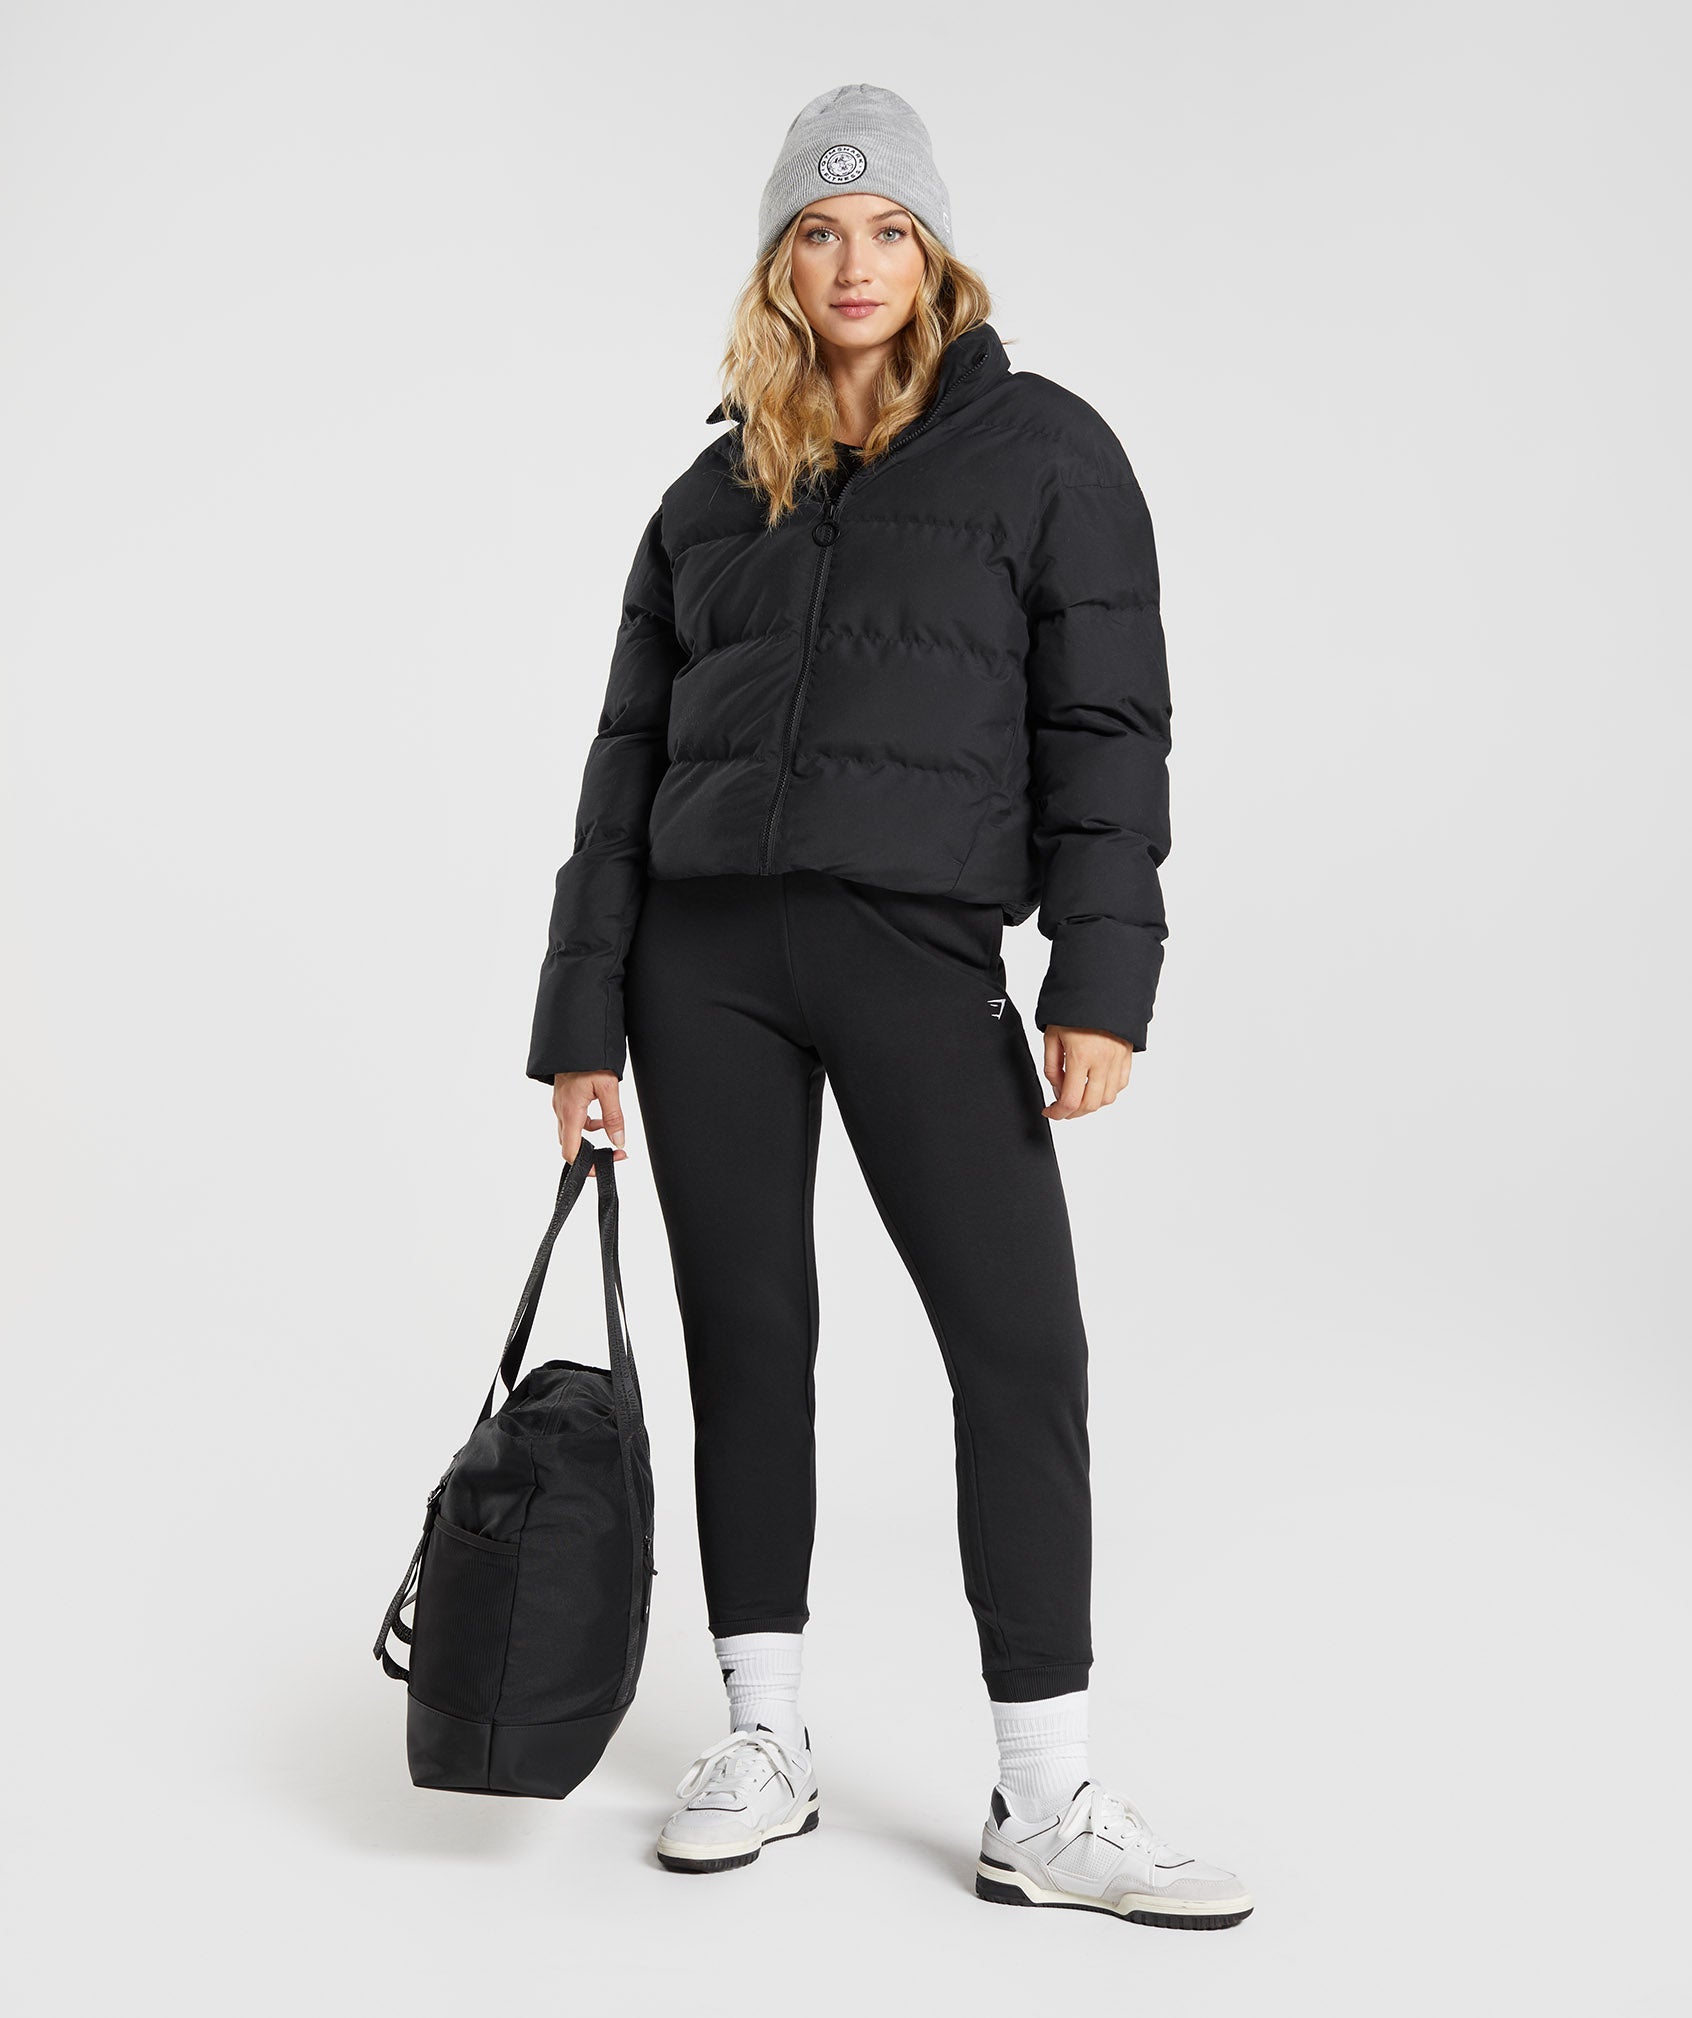 Gymshark Vest Zip Up Black Mens Restore Puffer Jacket Hooded size Large